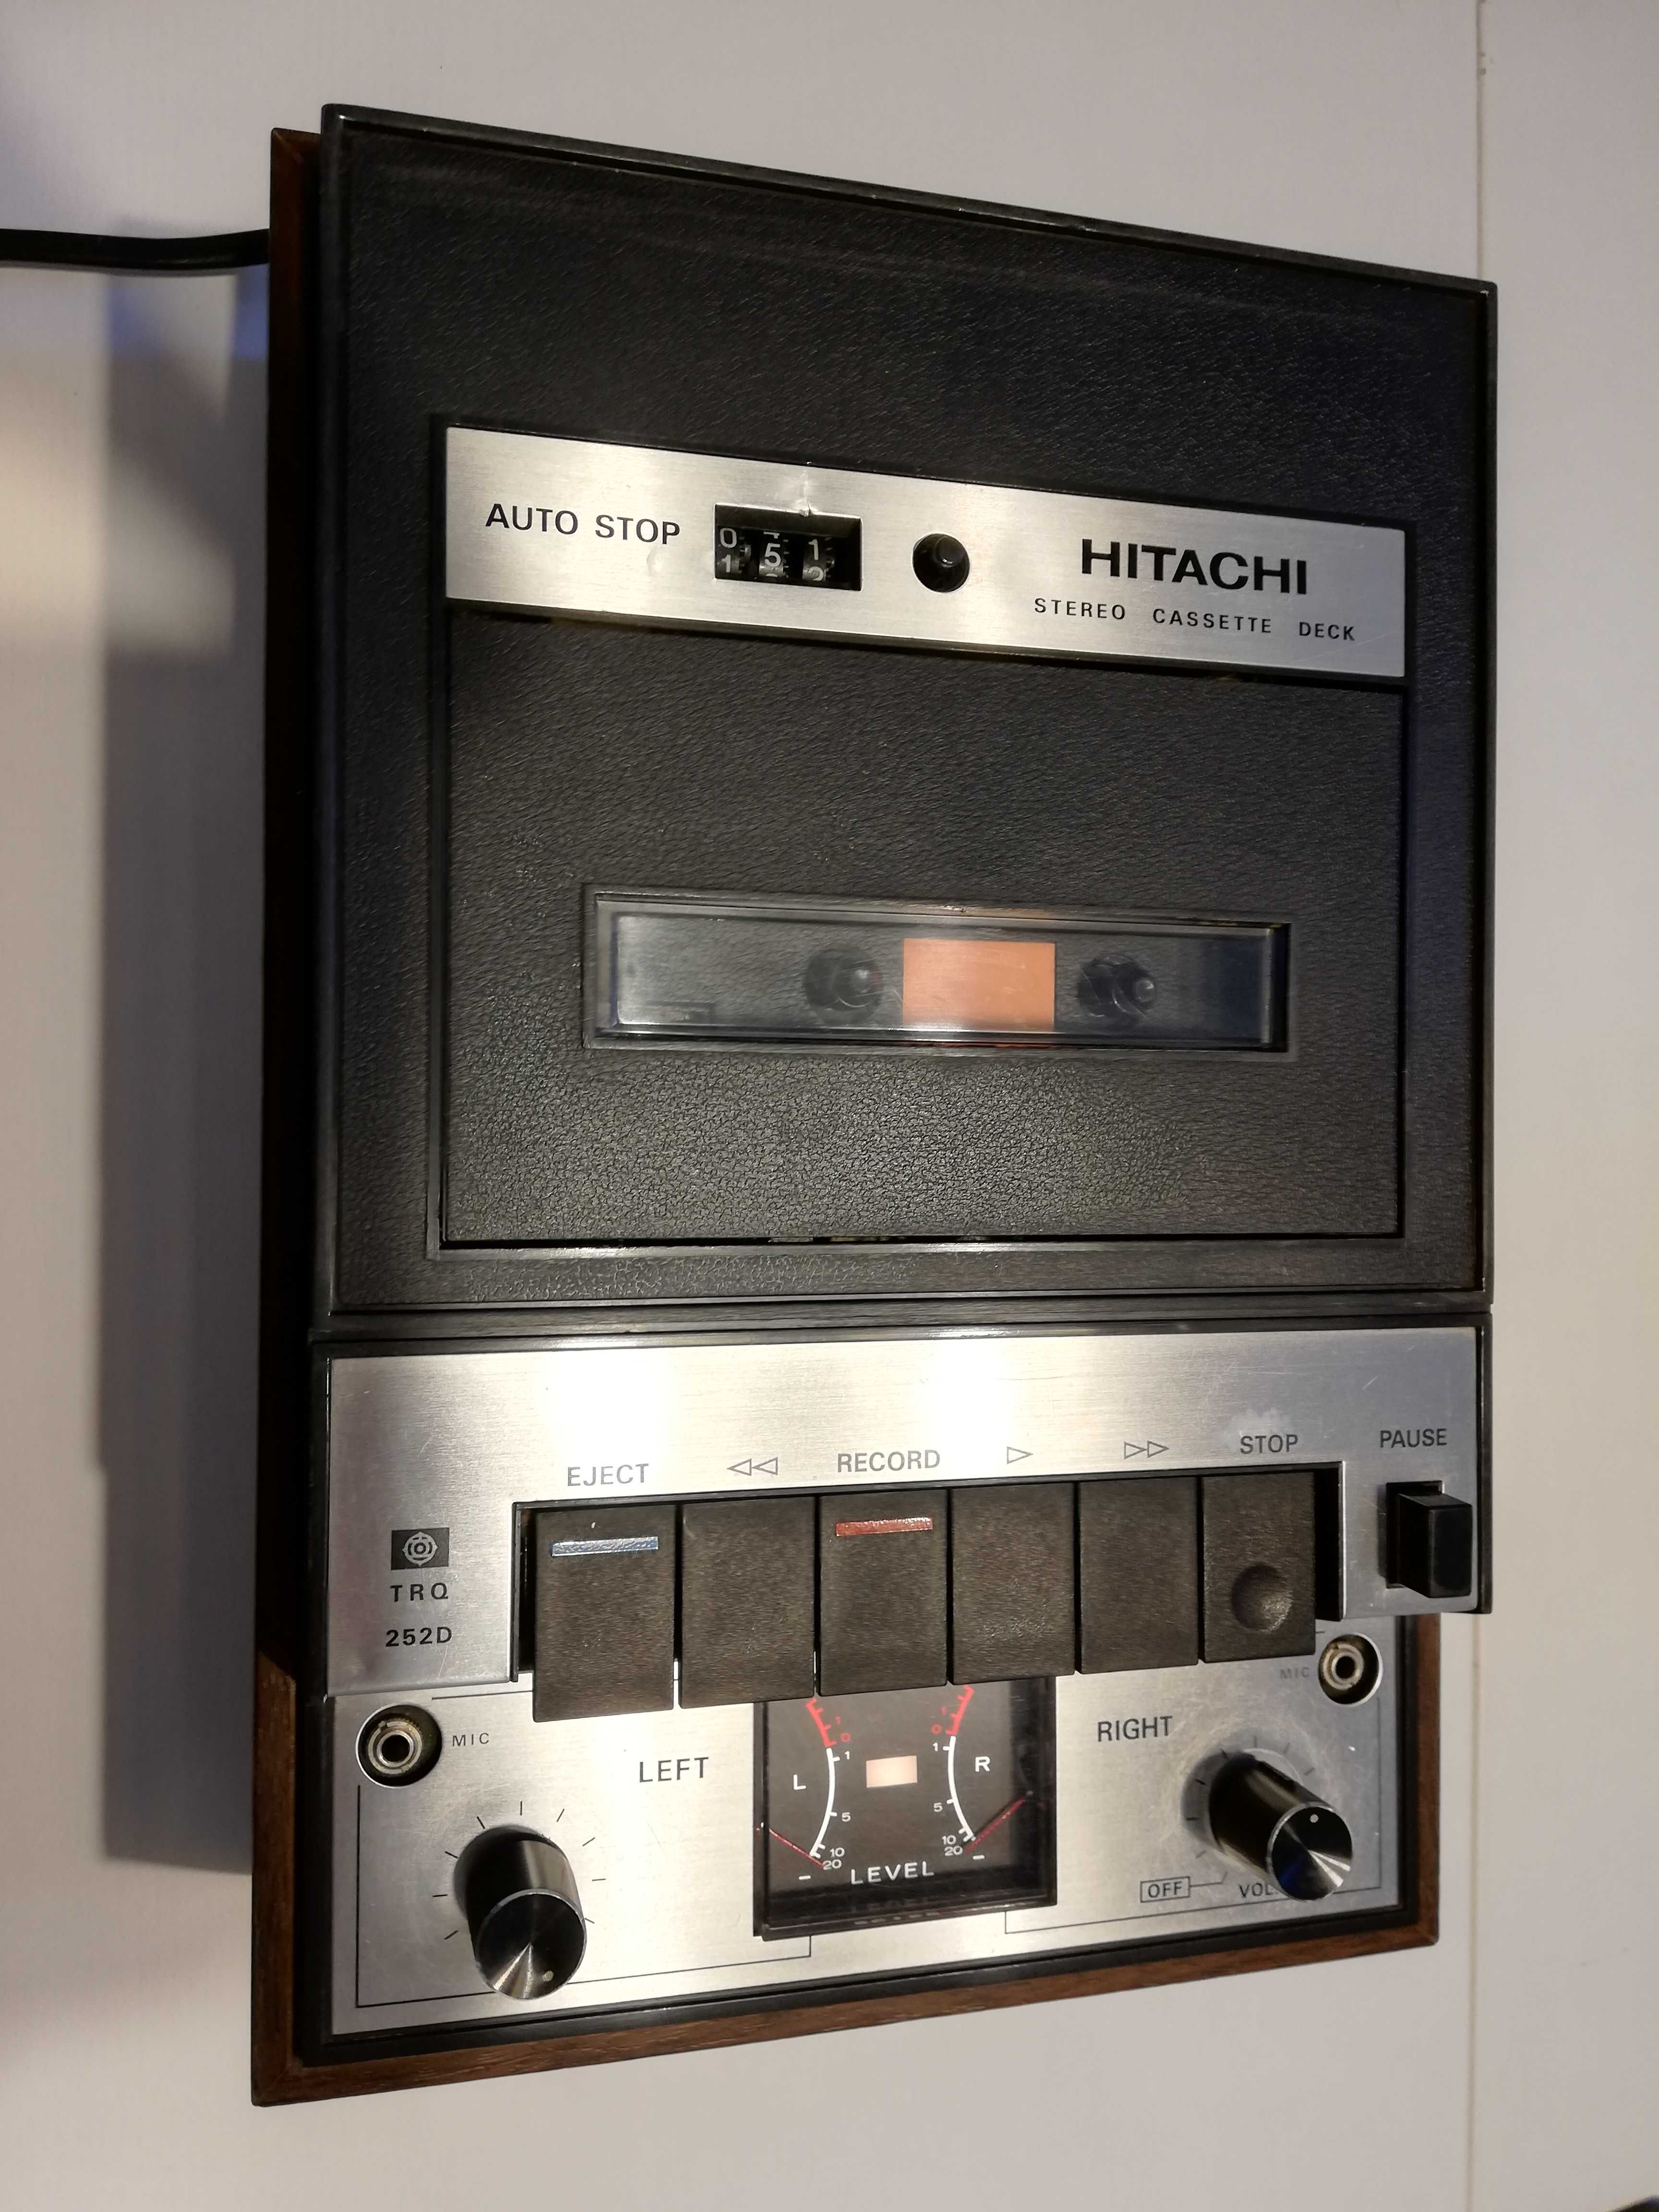 Stereo Cassette  Deck HITACHI TRQ252D - Impecabil/Rar/Vintage/Japan